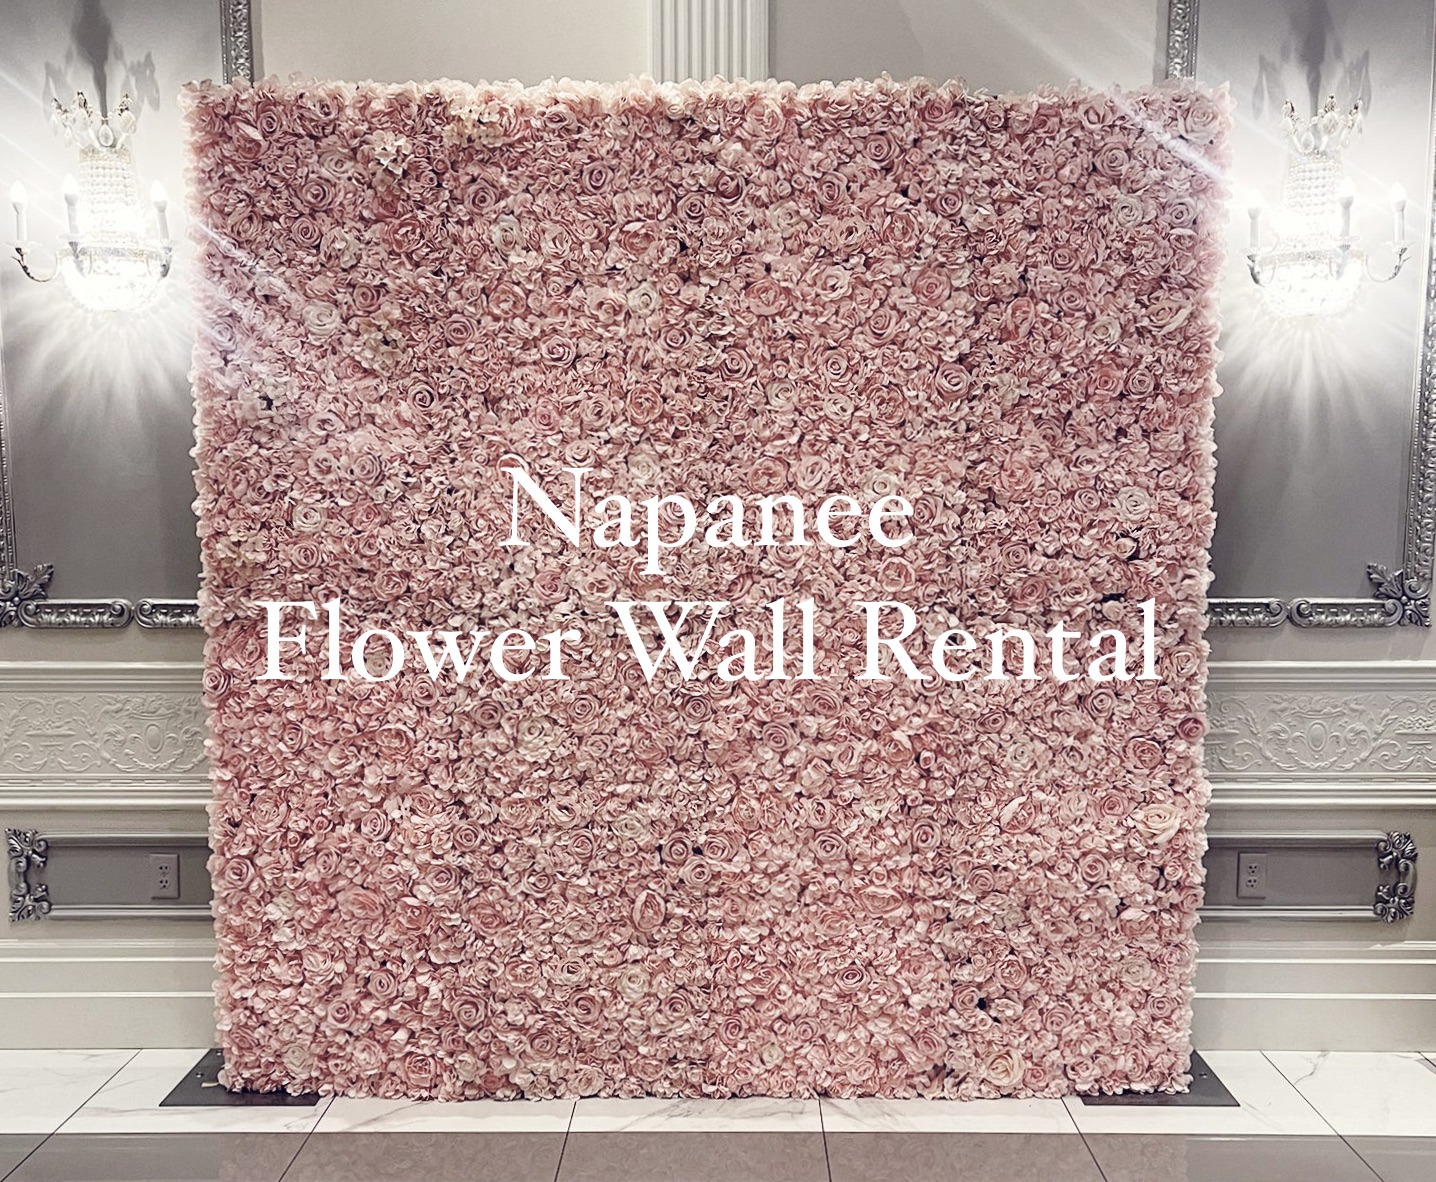 Napanee flower wall rental